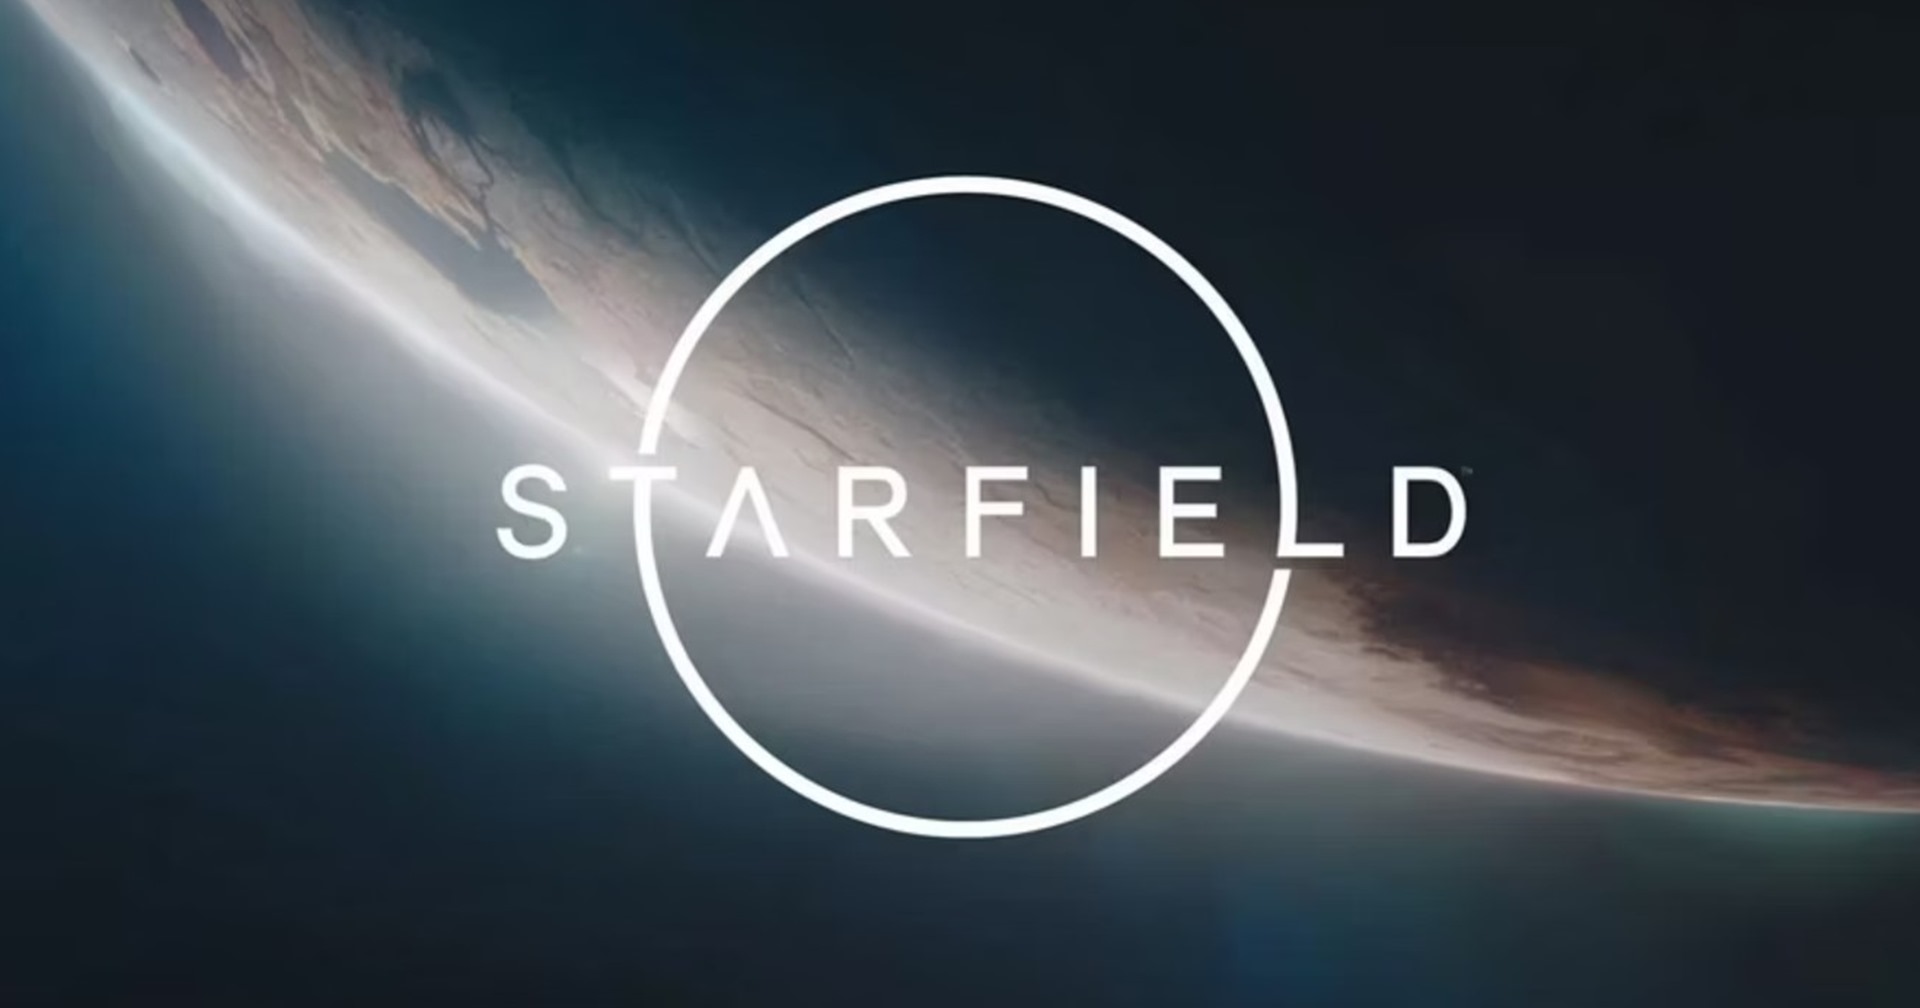 บอสใหญ่ XBox บอกเกม Starfield มีอะไรมากกว่า Skyrim บนอวกาศ